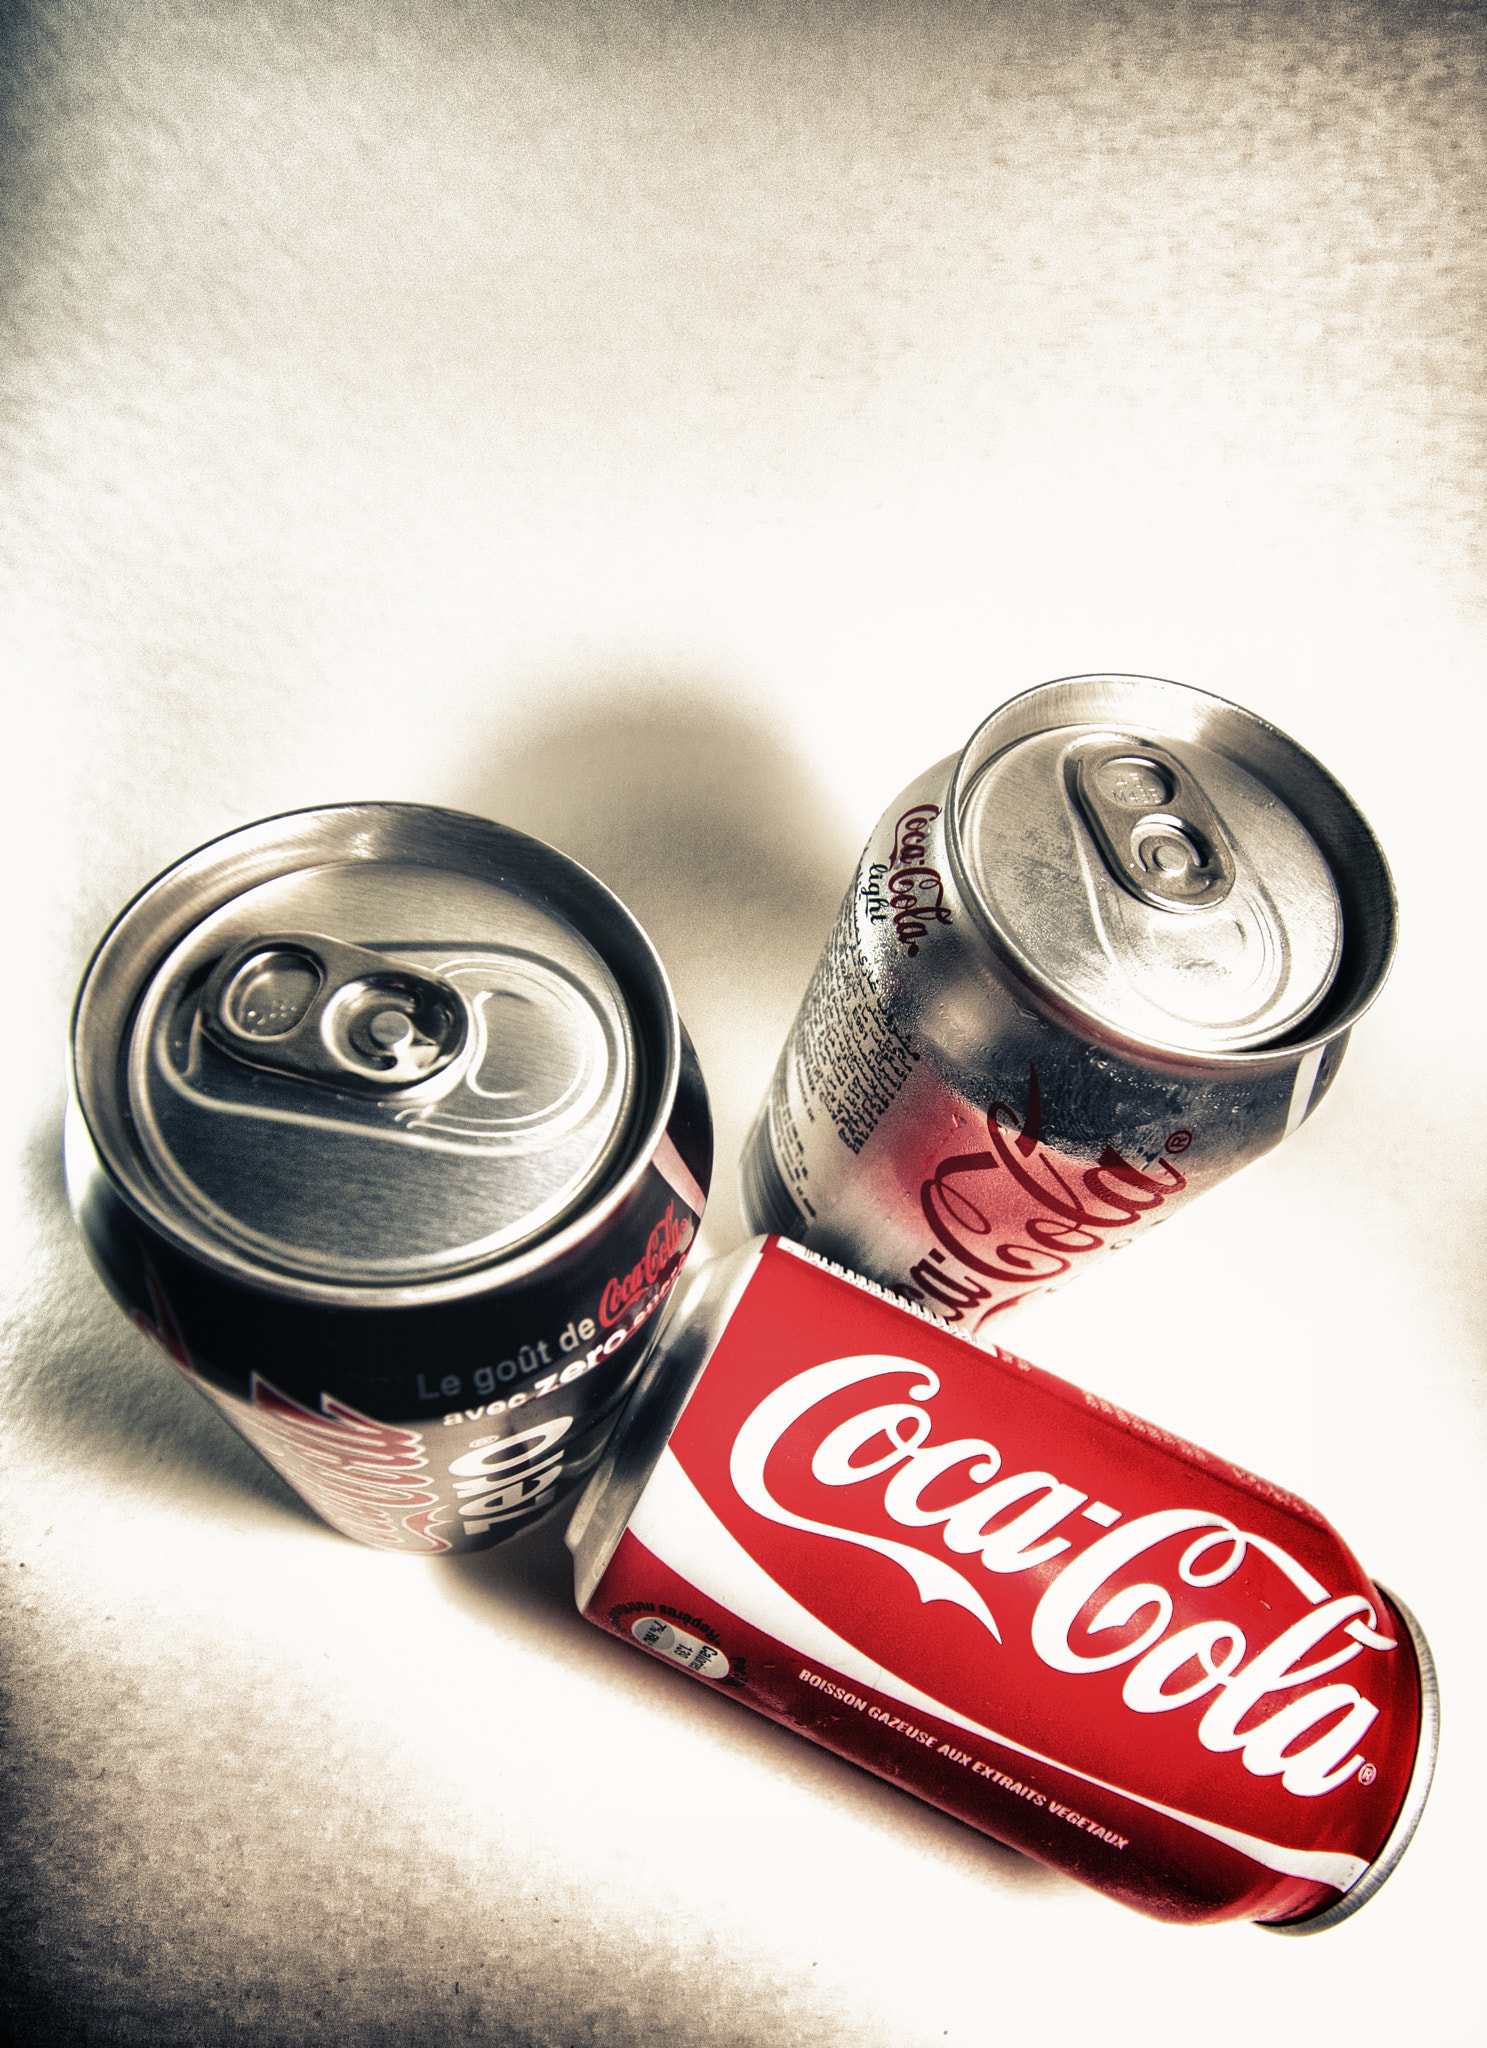 Canon EOS 40D sample photo. Coca cola photography